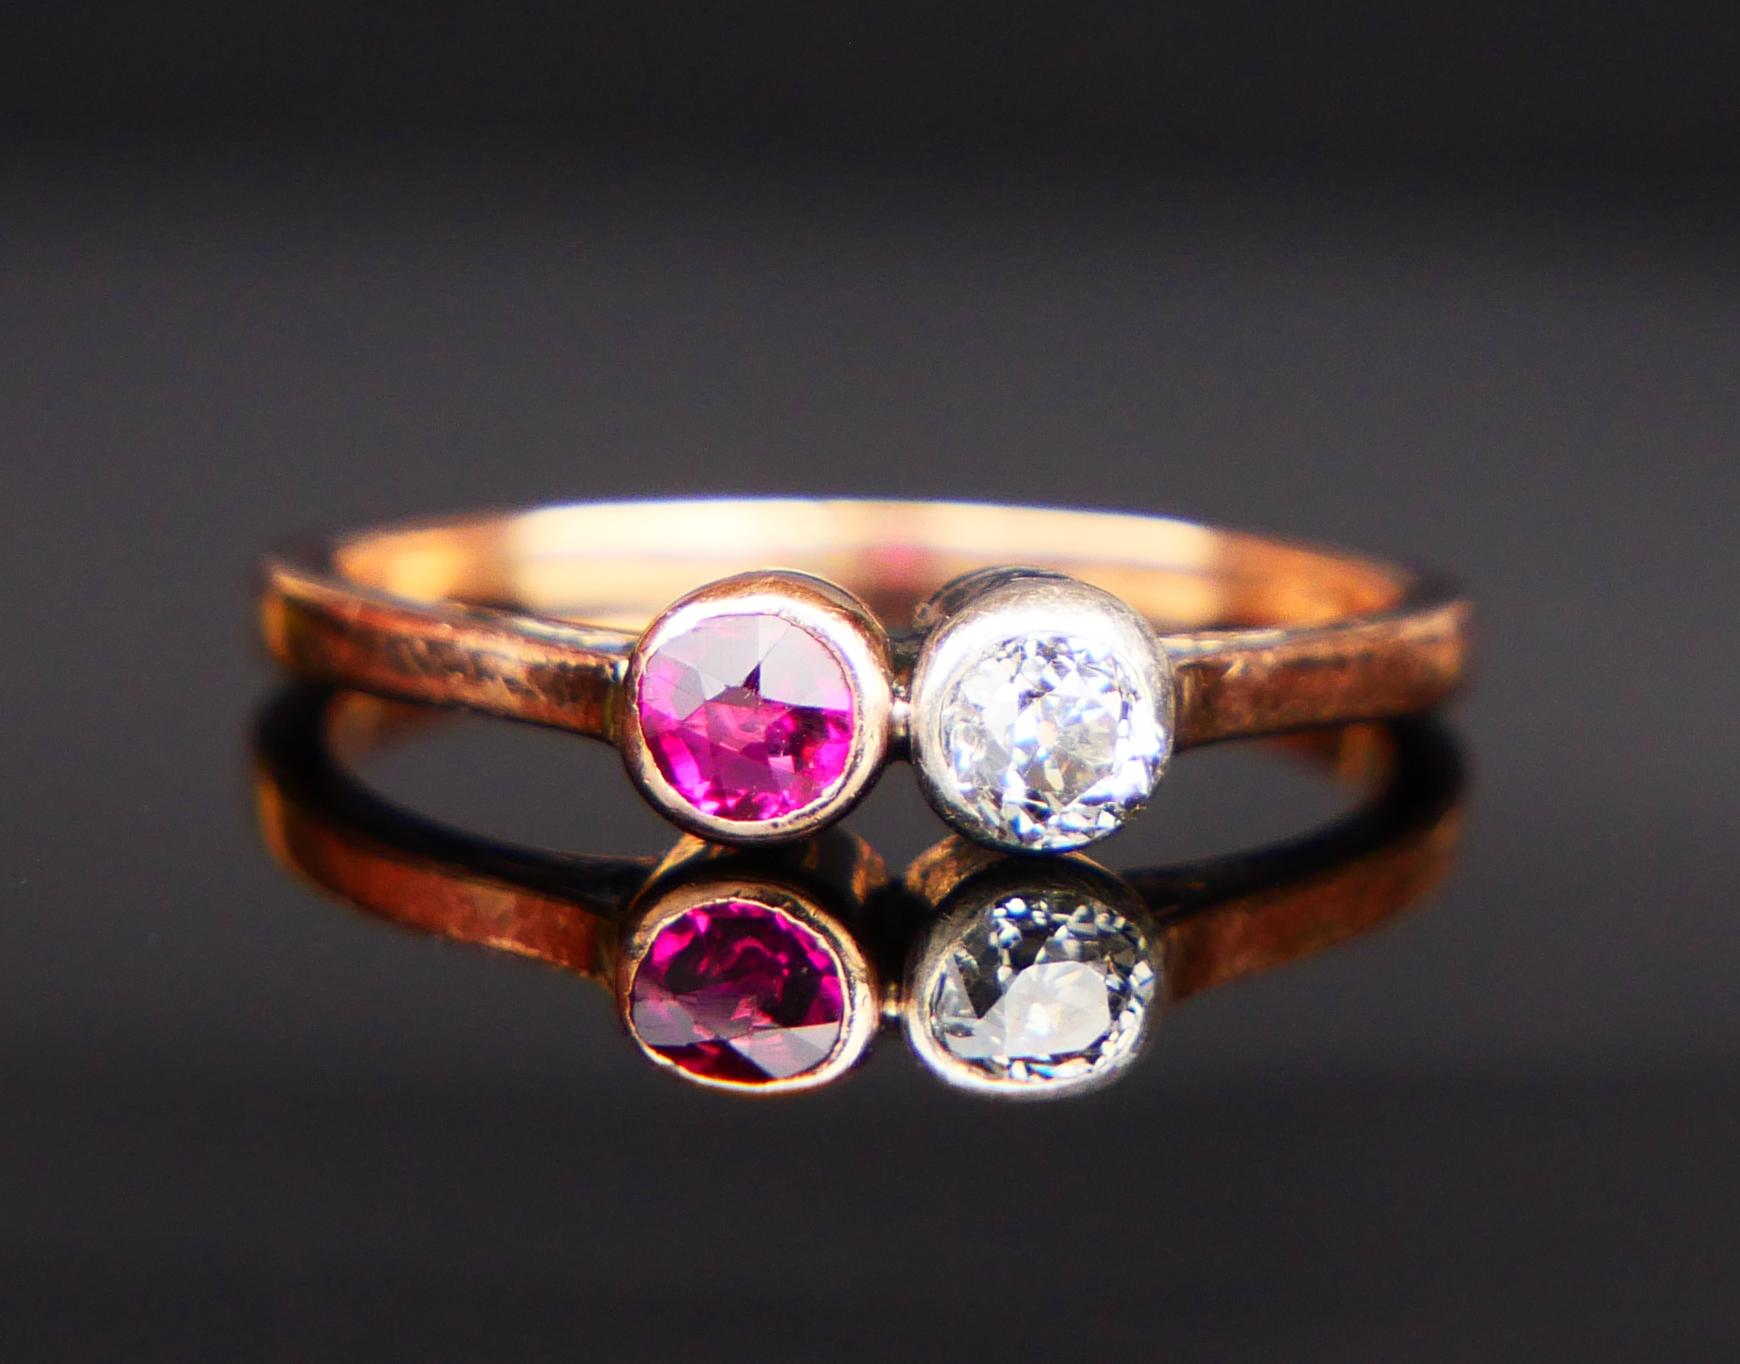 Bague datant des années 1920-1930 avec un anneau en or rose 14 carats orné d'un diamant de taille européenne Ø 3,5 mm / environ 0,2 ct / couleur G, H/SI dans un chaton en argent et d'un rubis de taille ancienne dans un chaton en or rose Ø 3 mm /